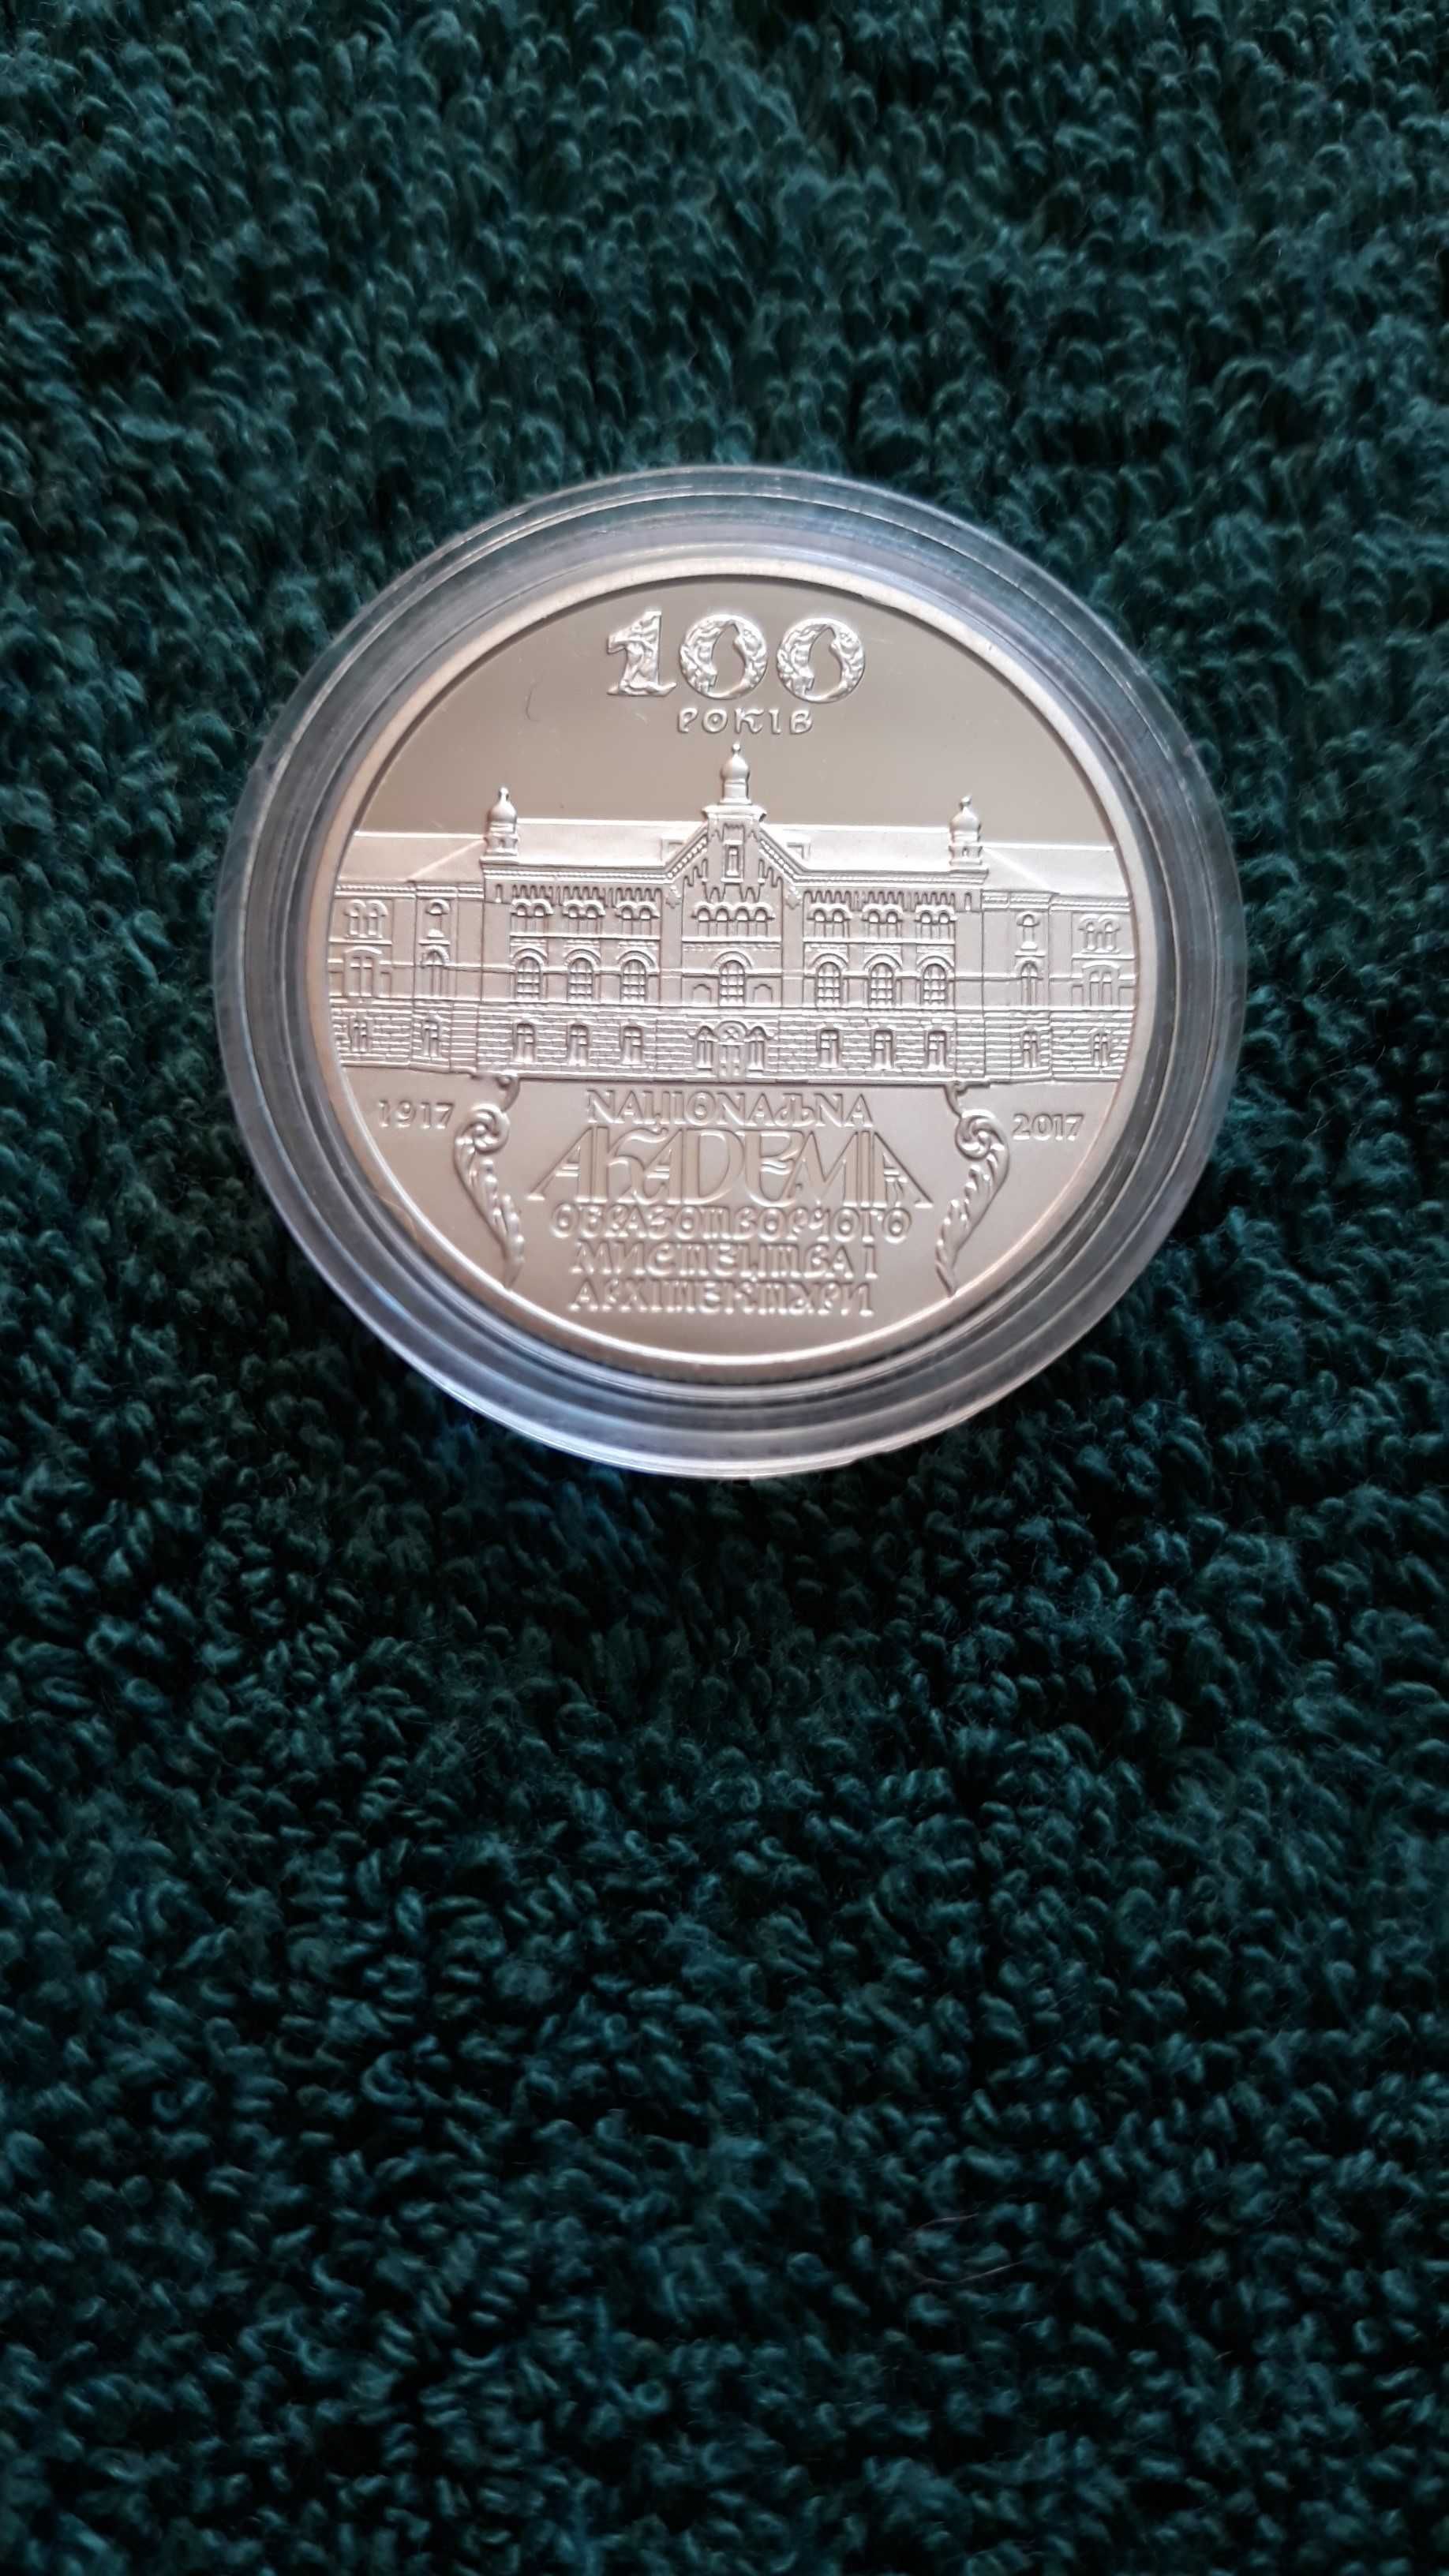 Монета 100 років Нац. академ образотворчого мистецтва 2 грн. 2017